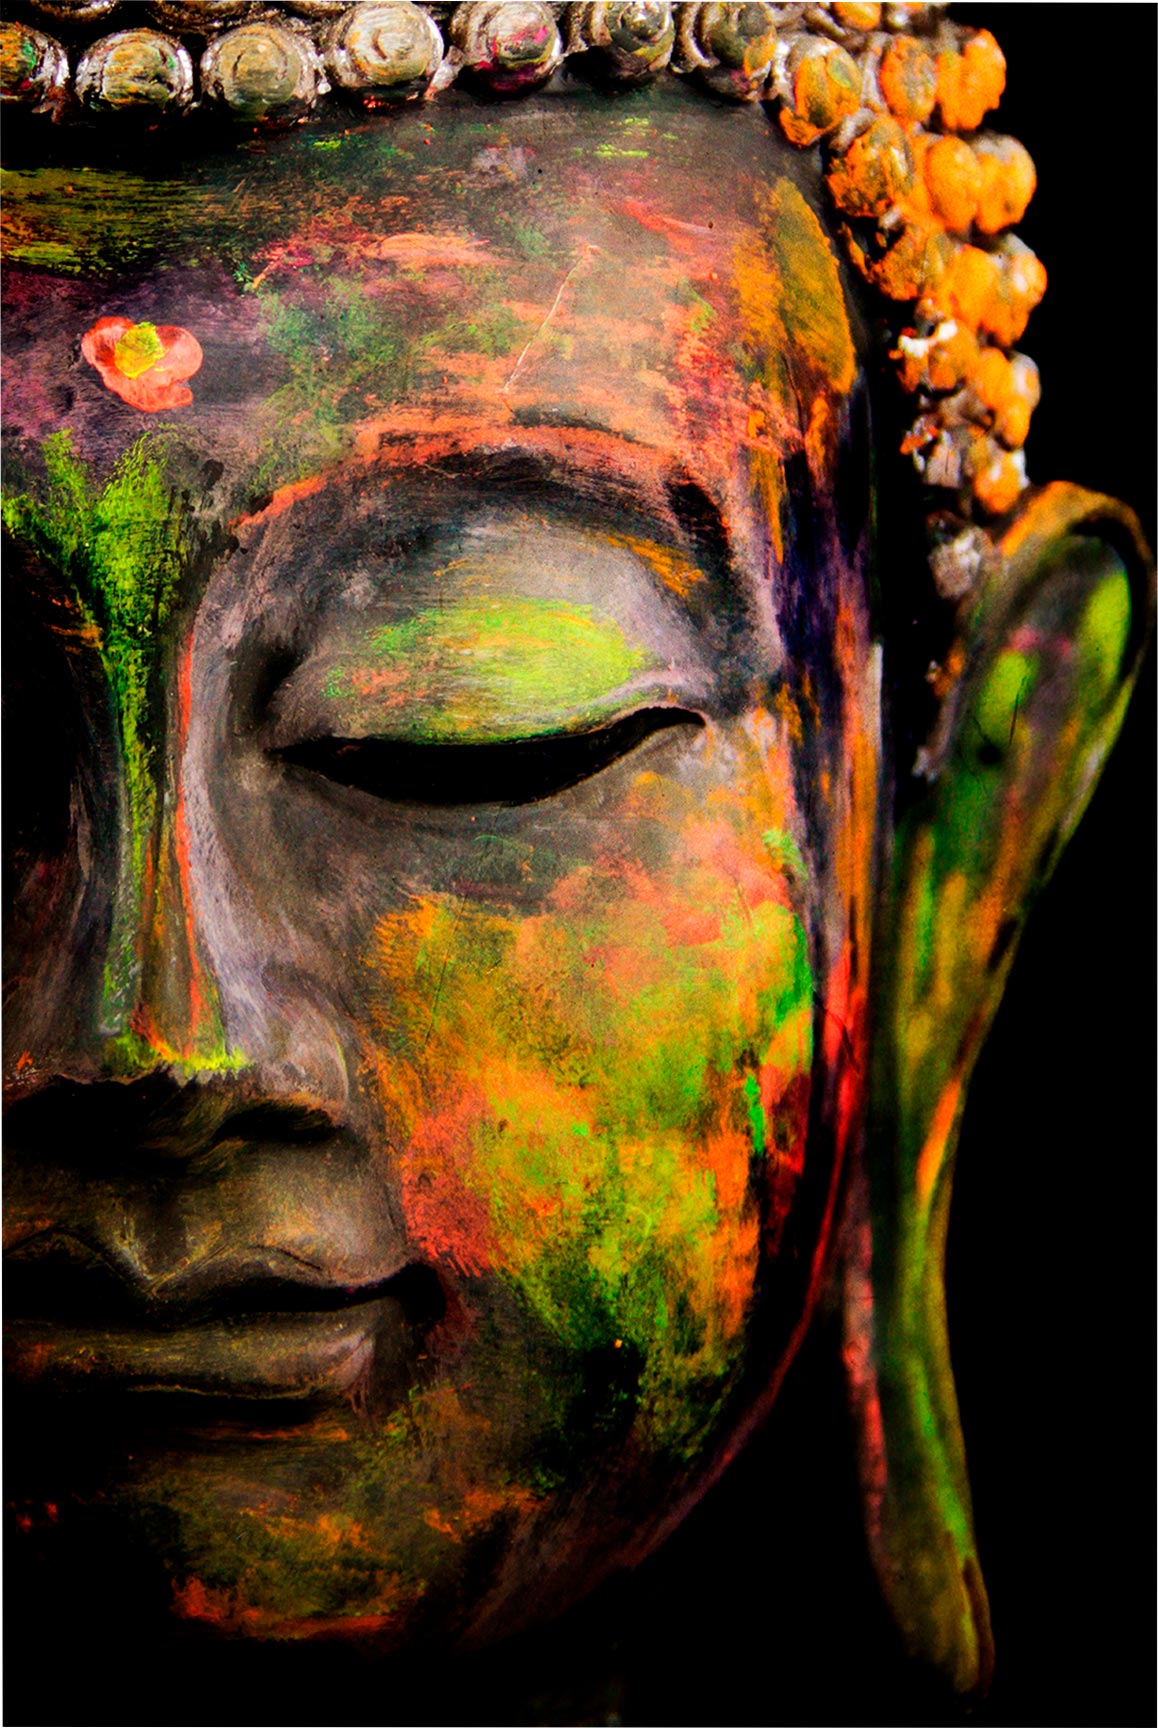 Quadro Retangular - A face de Buda colorida